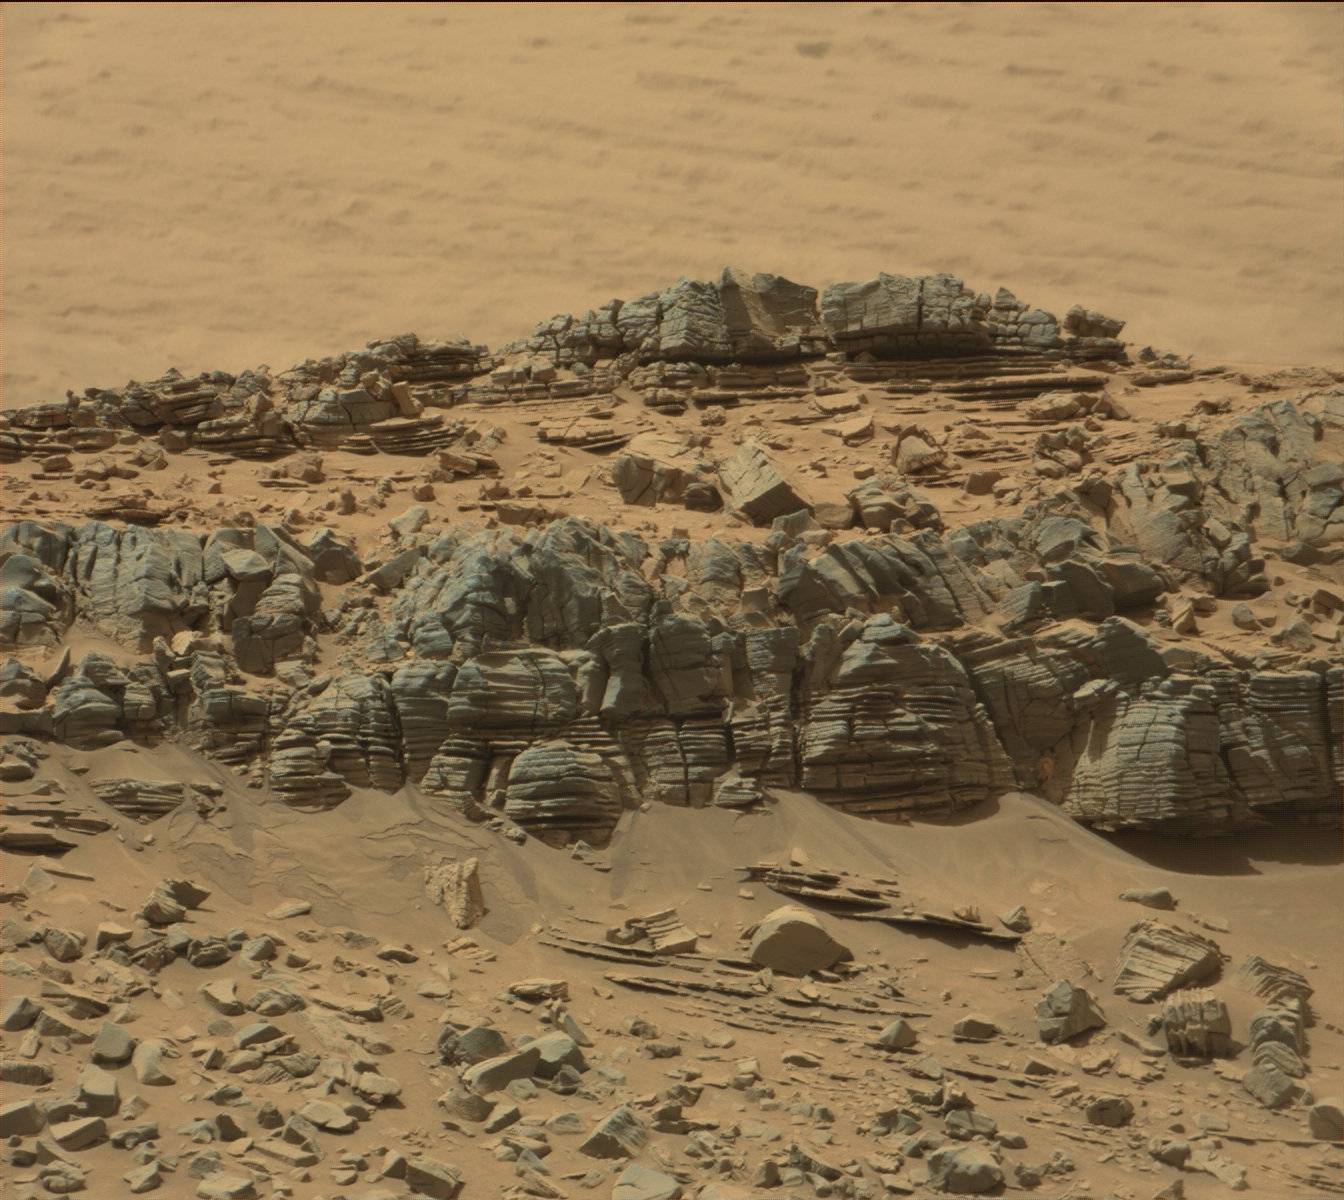 La imagen de 'Curiosity' donde algunos han visto un cangrejo en la base de la formación rocosa a la derecha.